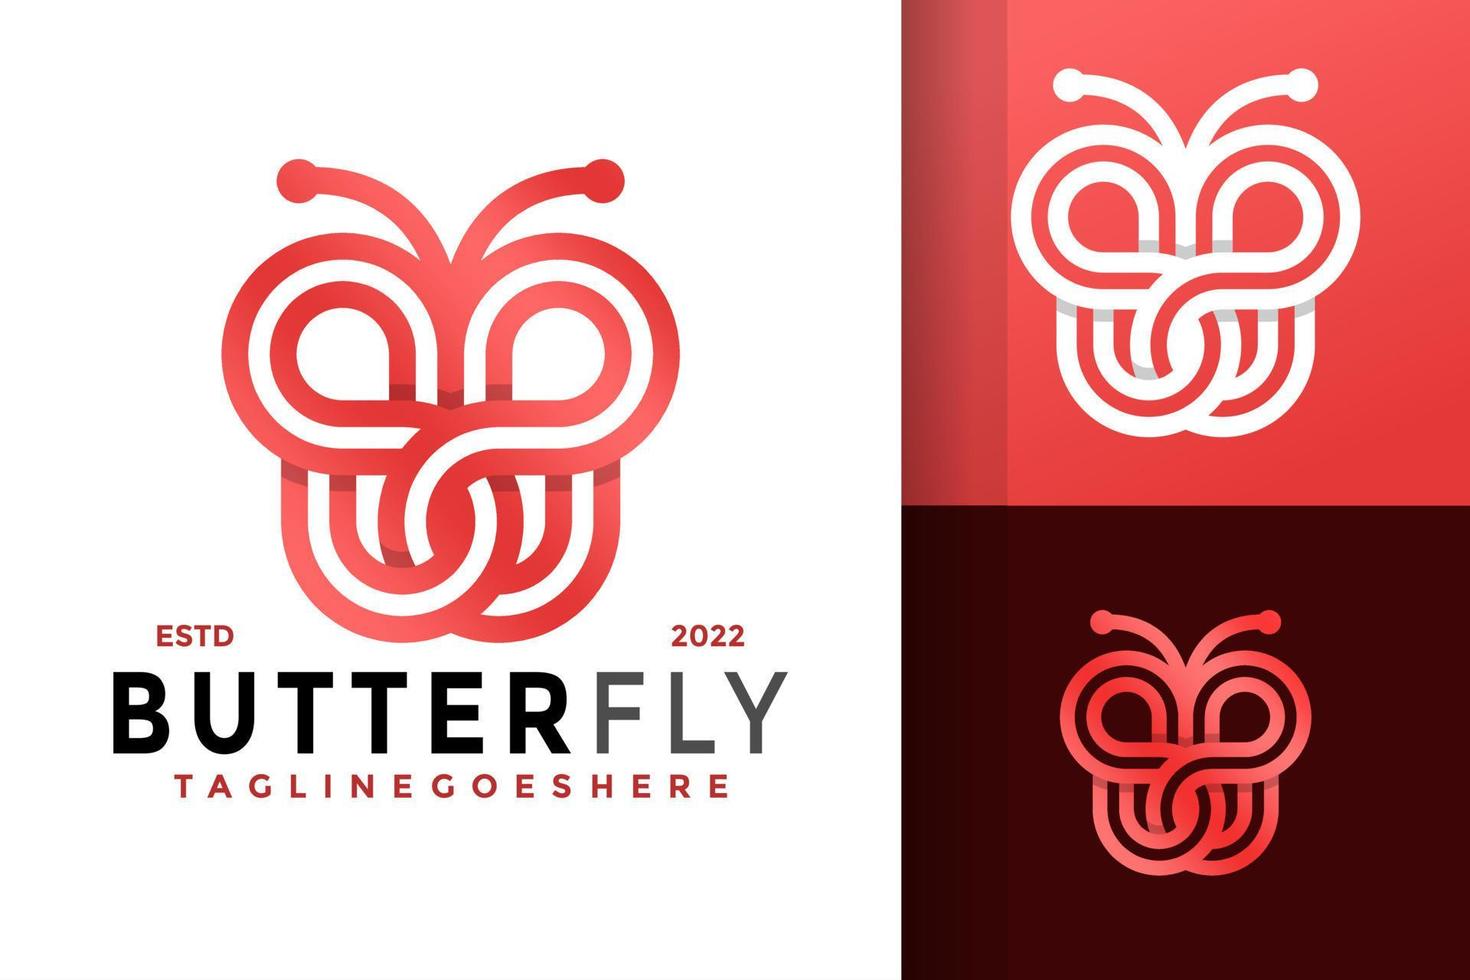 b-Buchstaben-Schmetterlings-Logo-Design, Markenidentitäts-Logos-Vektor, modernes Logo, Logo-Designs-Vektor-Illustrationsvorlage vektor